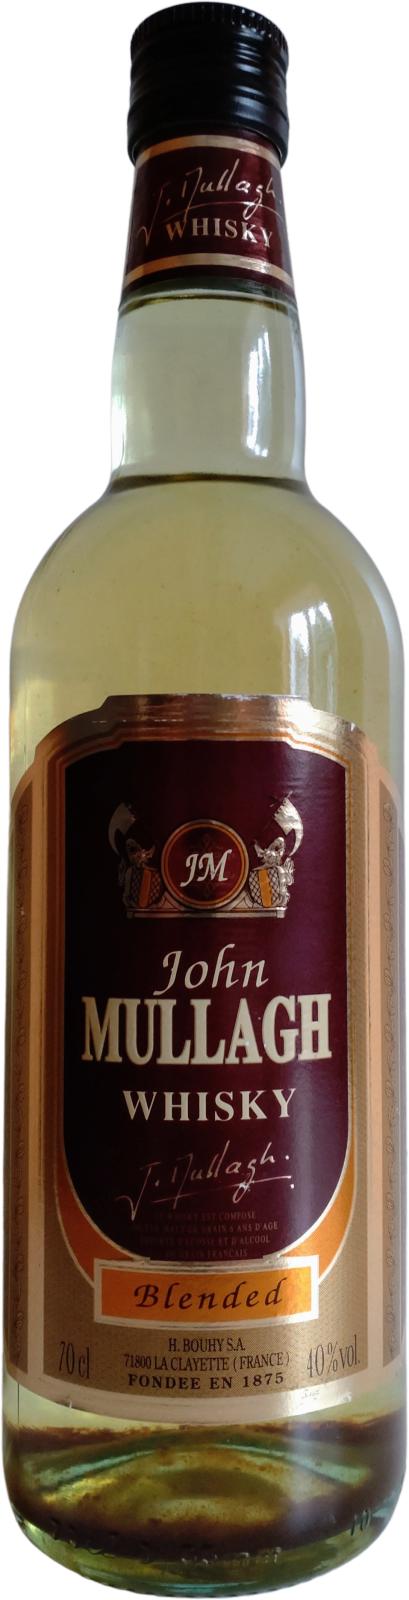 John Mullagh Whisky 40% 700ml